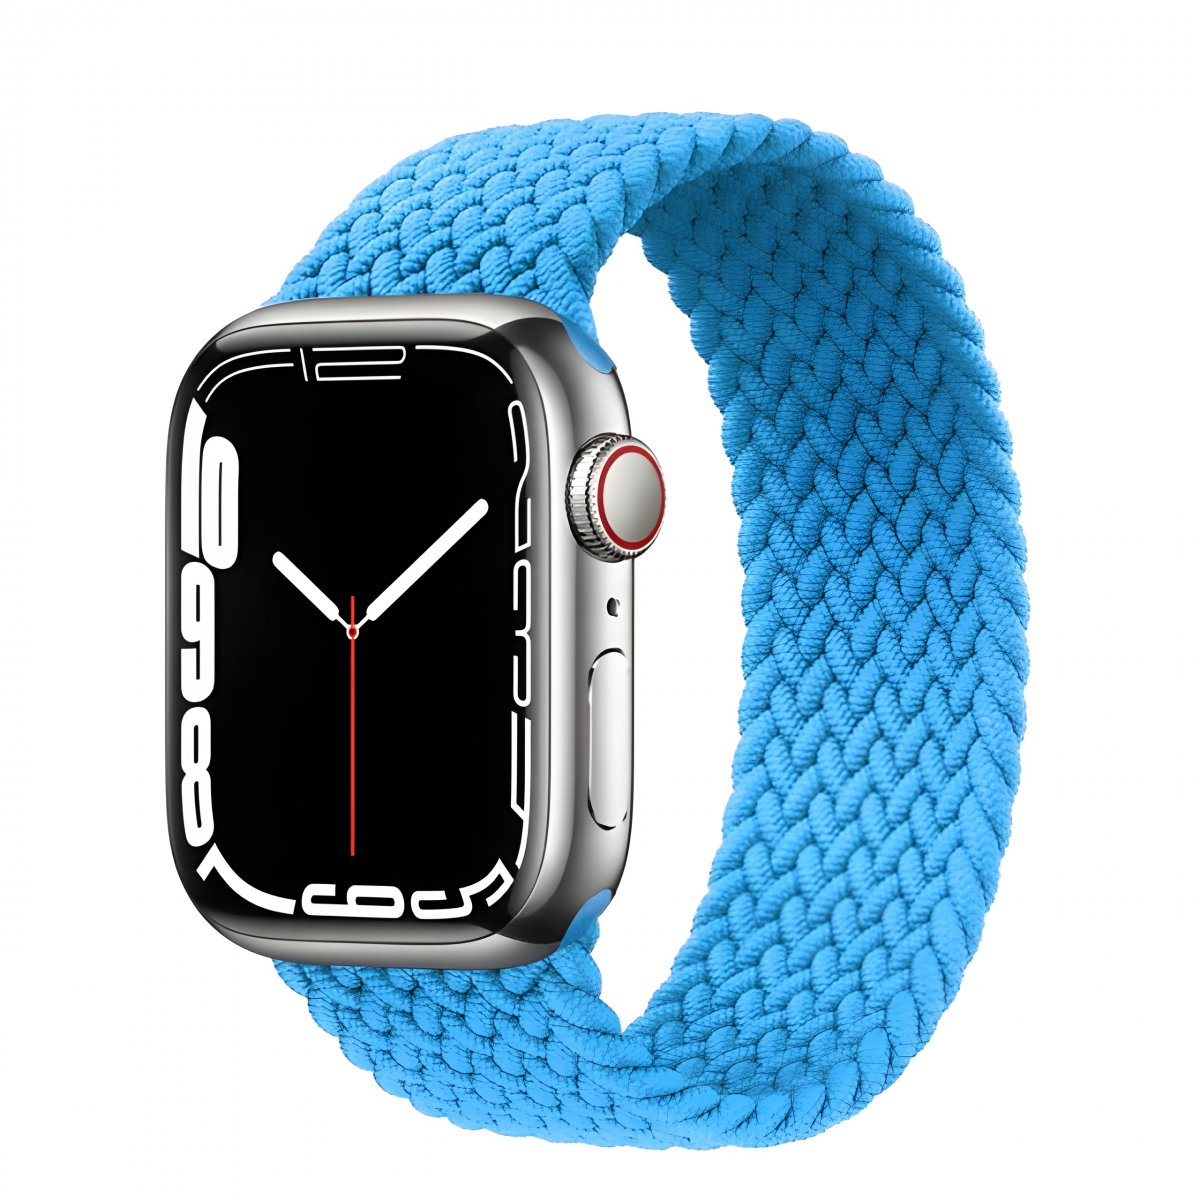 Řemínek iMore Braided Solo Loop Apple Watch Series 1/2/3 38mm - bazénově modrá (L)